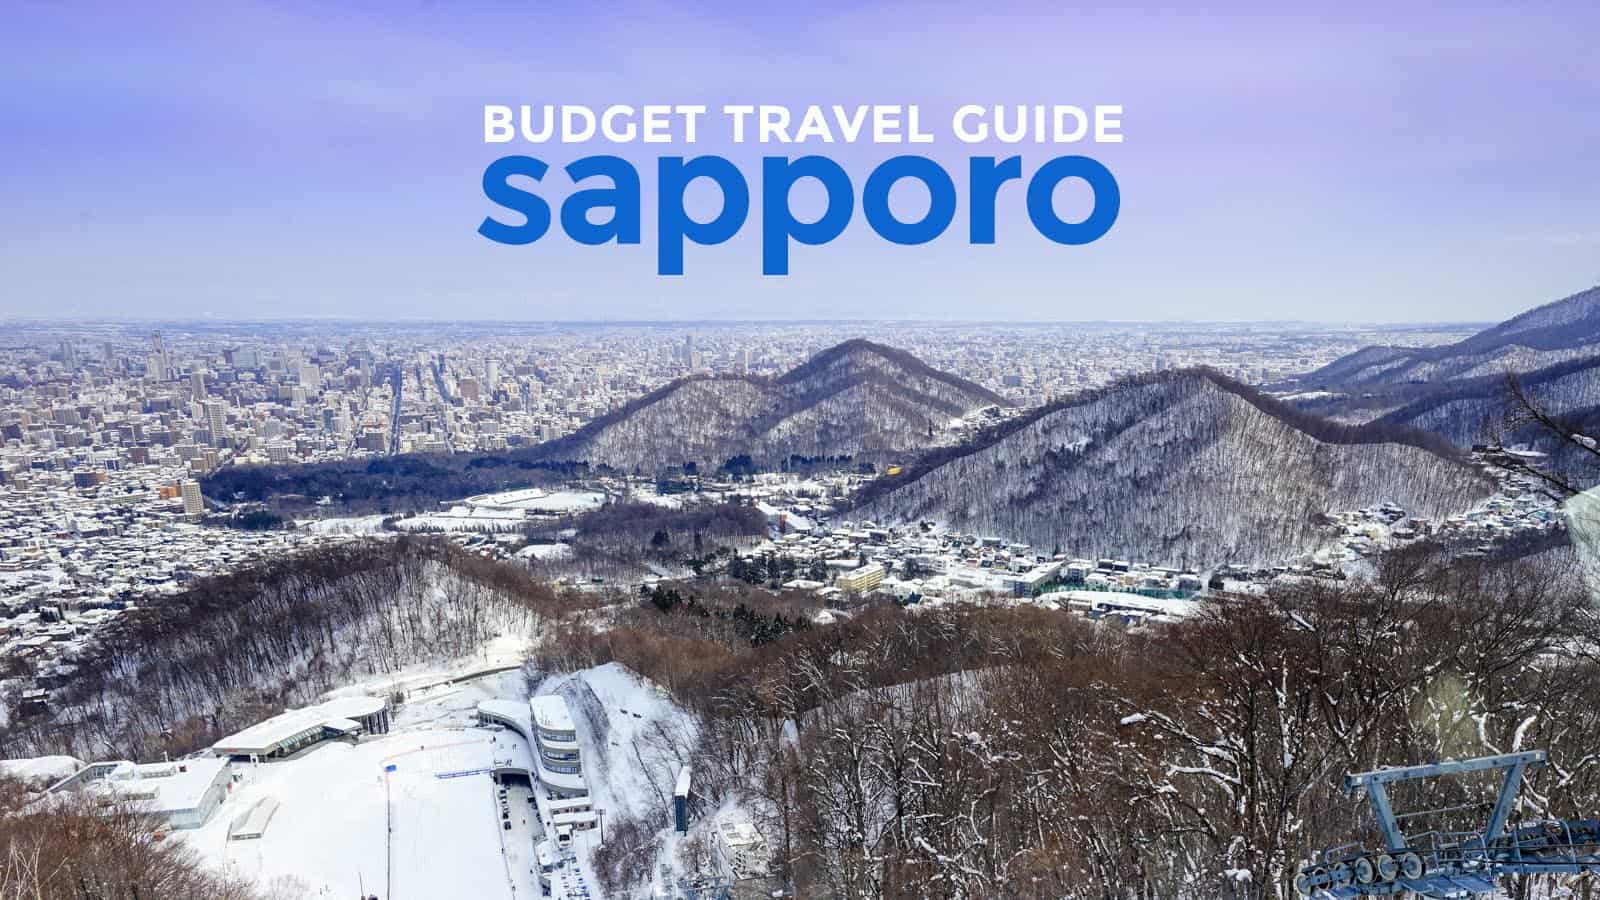 札幌的预算:旅游指南和行程